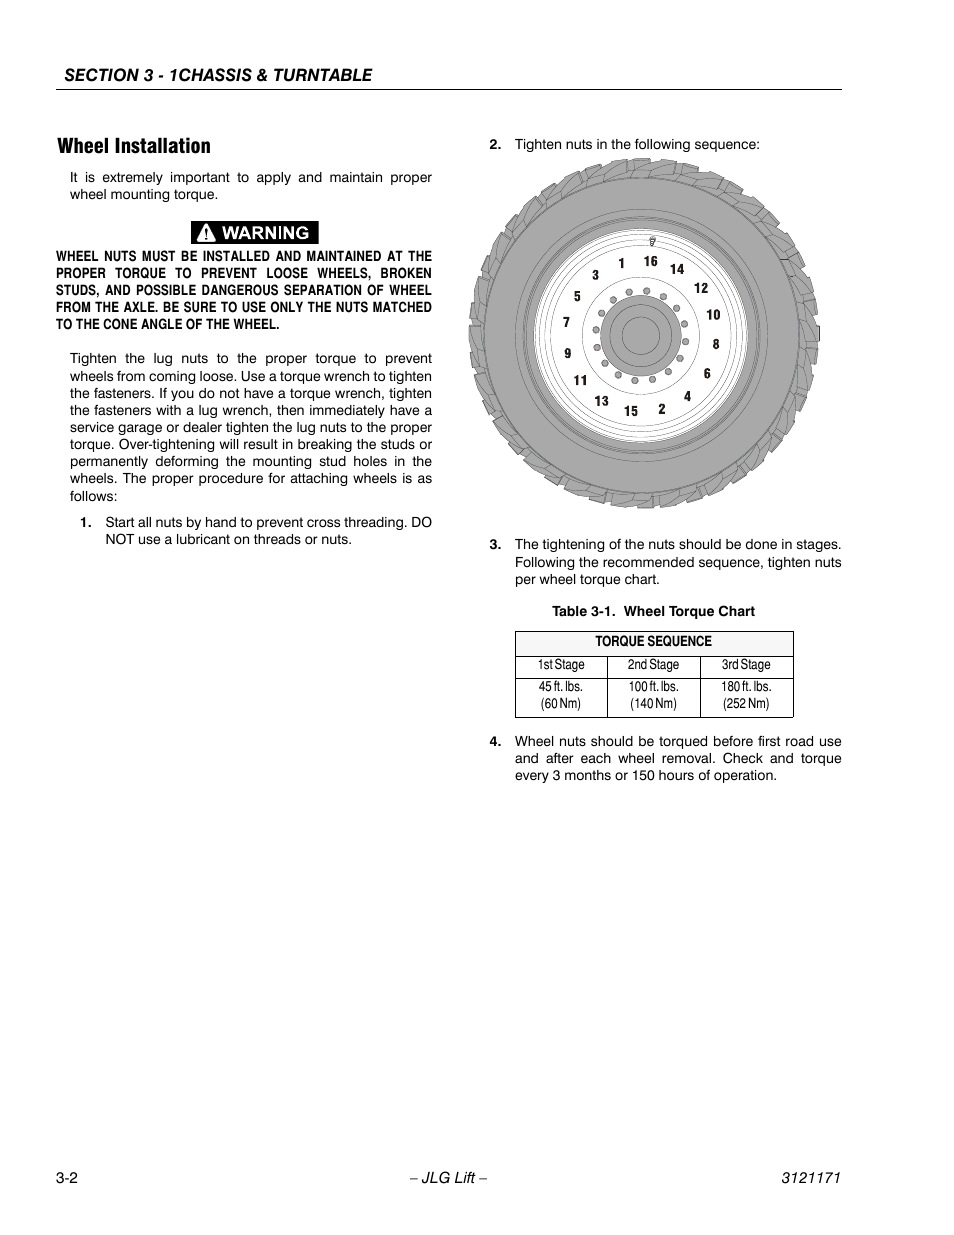 printable-automotive-wheel-torque-chart-printable-world-holiday